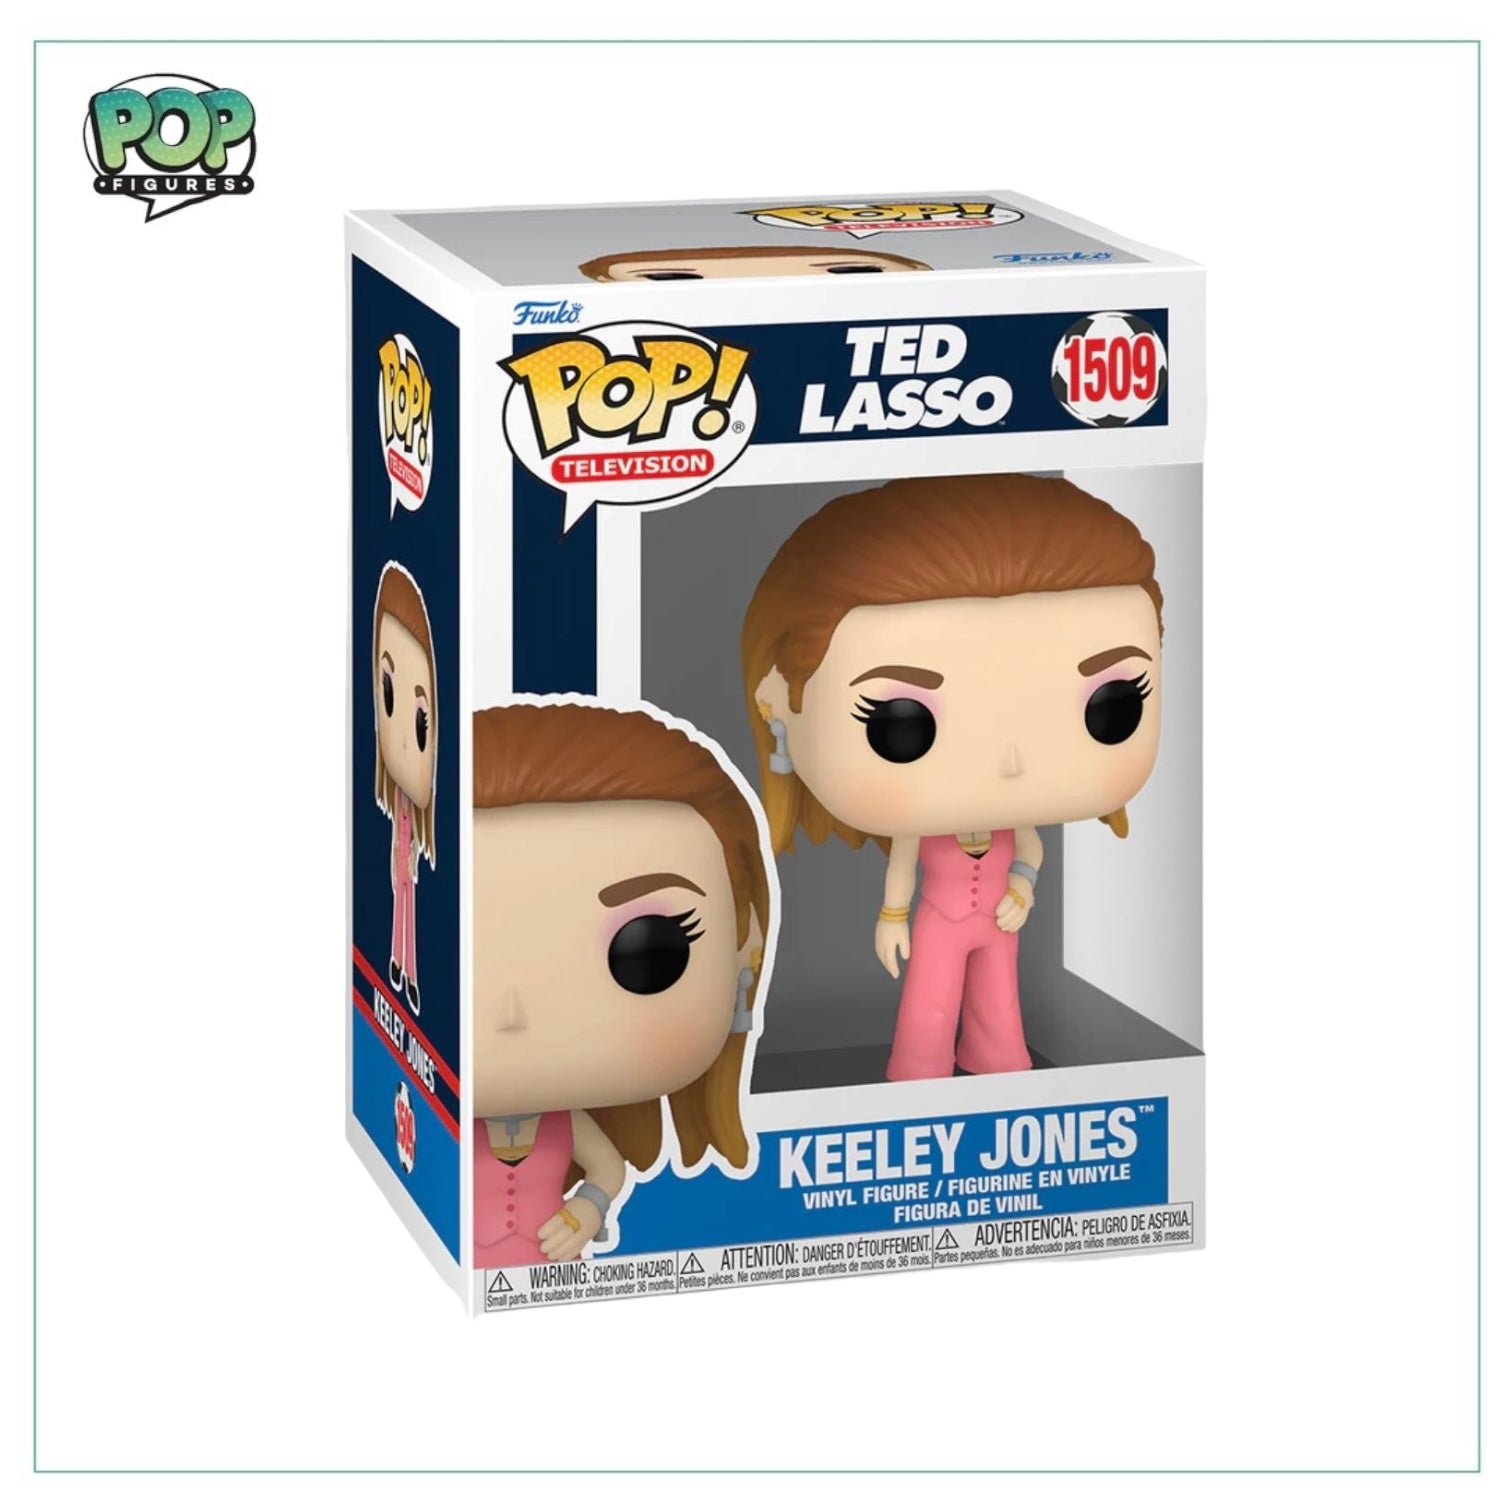 Keeley Jones in Pink #1509 Funko Pop! - Ted Lasso